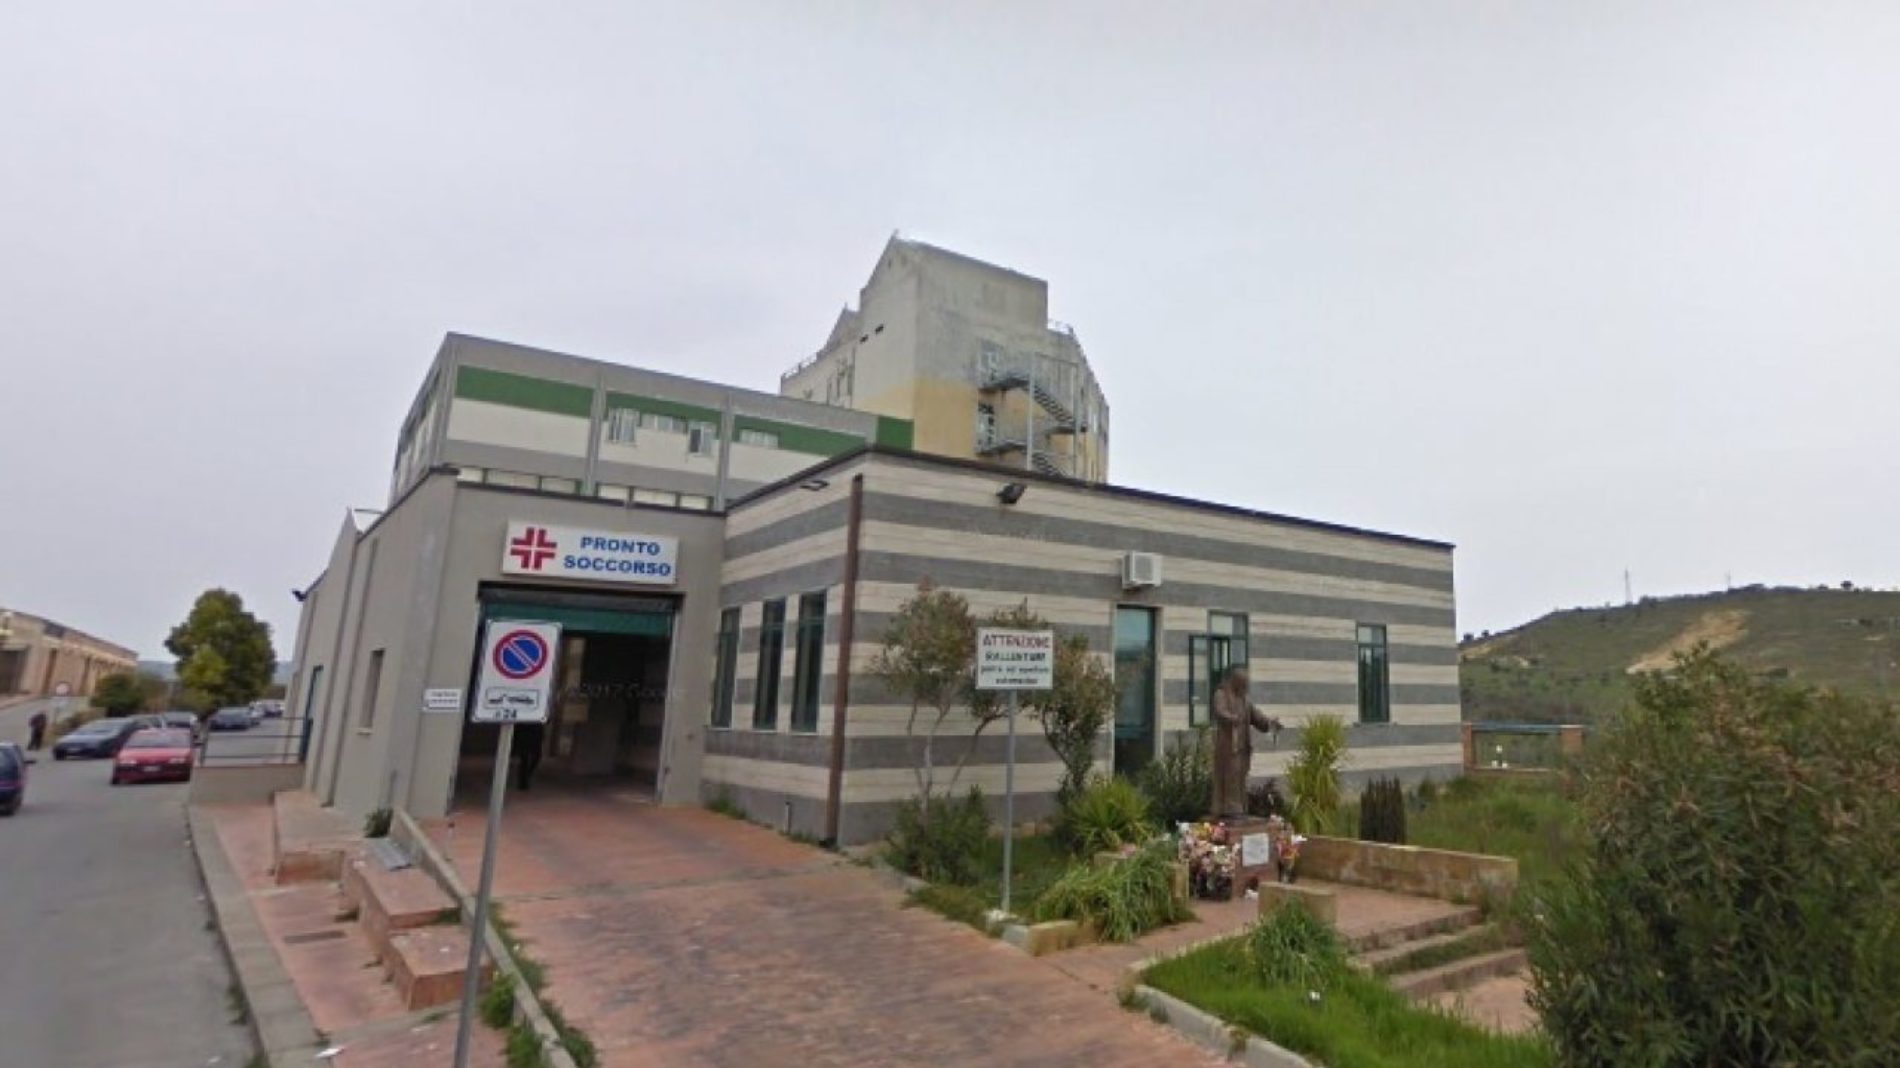 LEONFORTE. Ospedale Ferro Branciforti Capra Giarrizzo (M5S): “Ho scritto alla Regione su trasferimento ambulanza e carenze strutturali”.